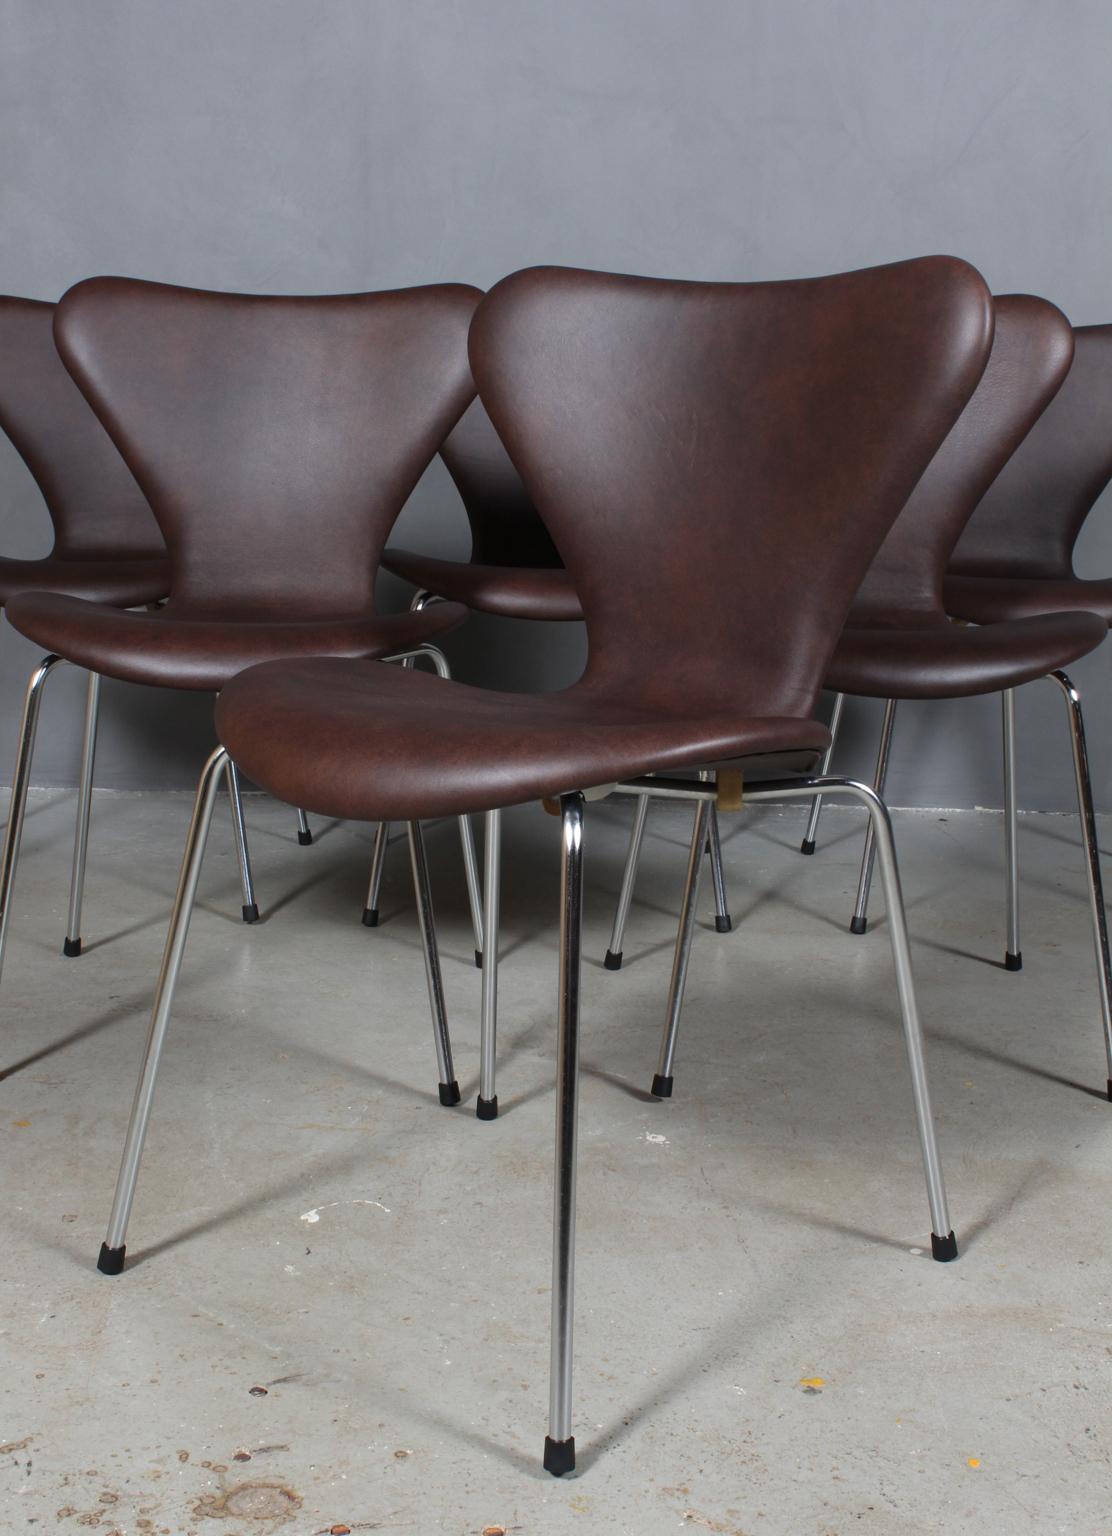 Chaise de salle à manger Arne Jacobsen nouvellement tapissée de cuir aniline Mokka.

Base en tube d'acier chromé.

Modèle 3107 Syveren, fabriqué par Fritz Hansen.